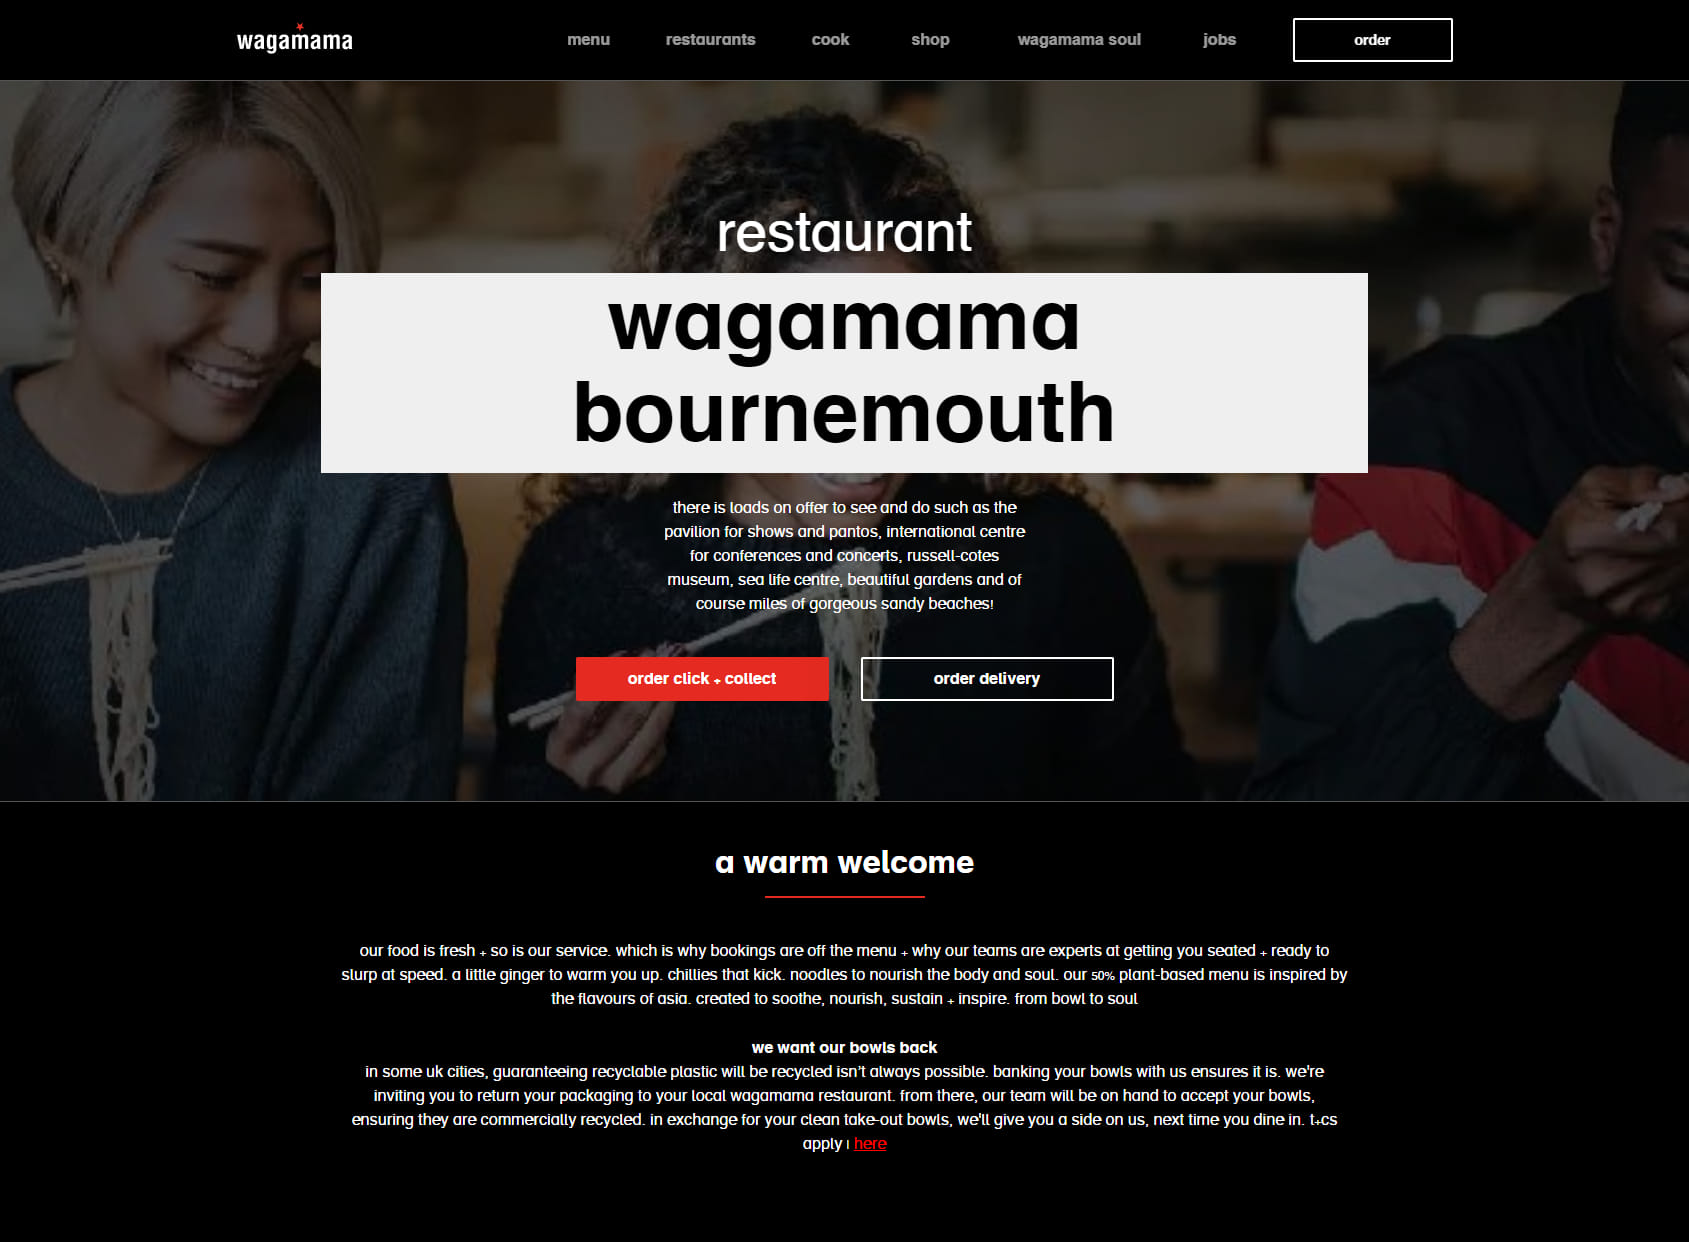 wagamama bournemouth